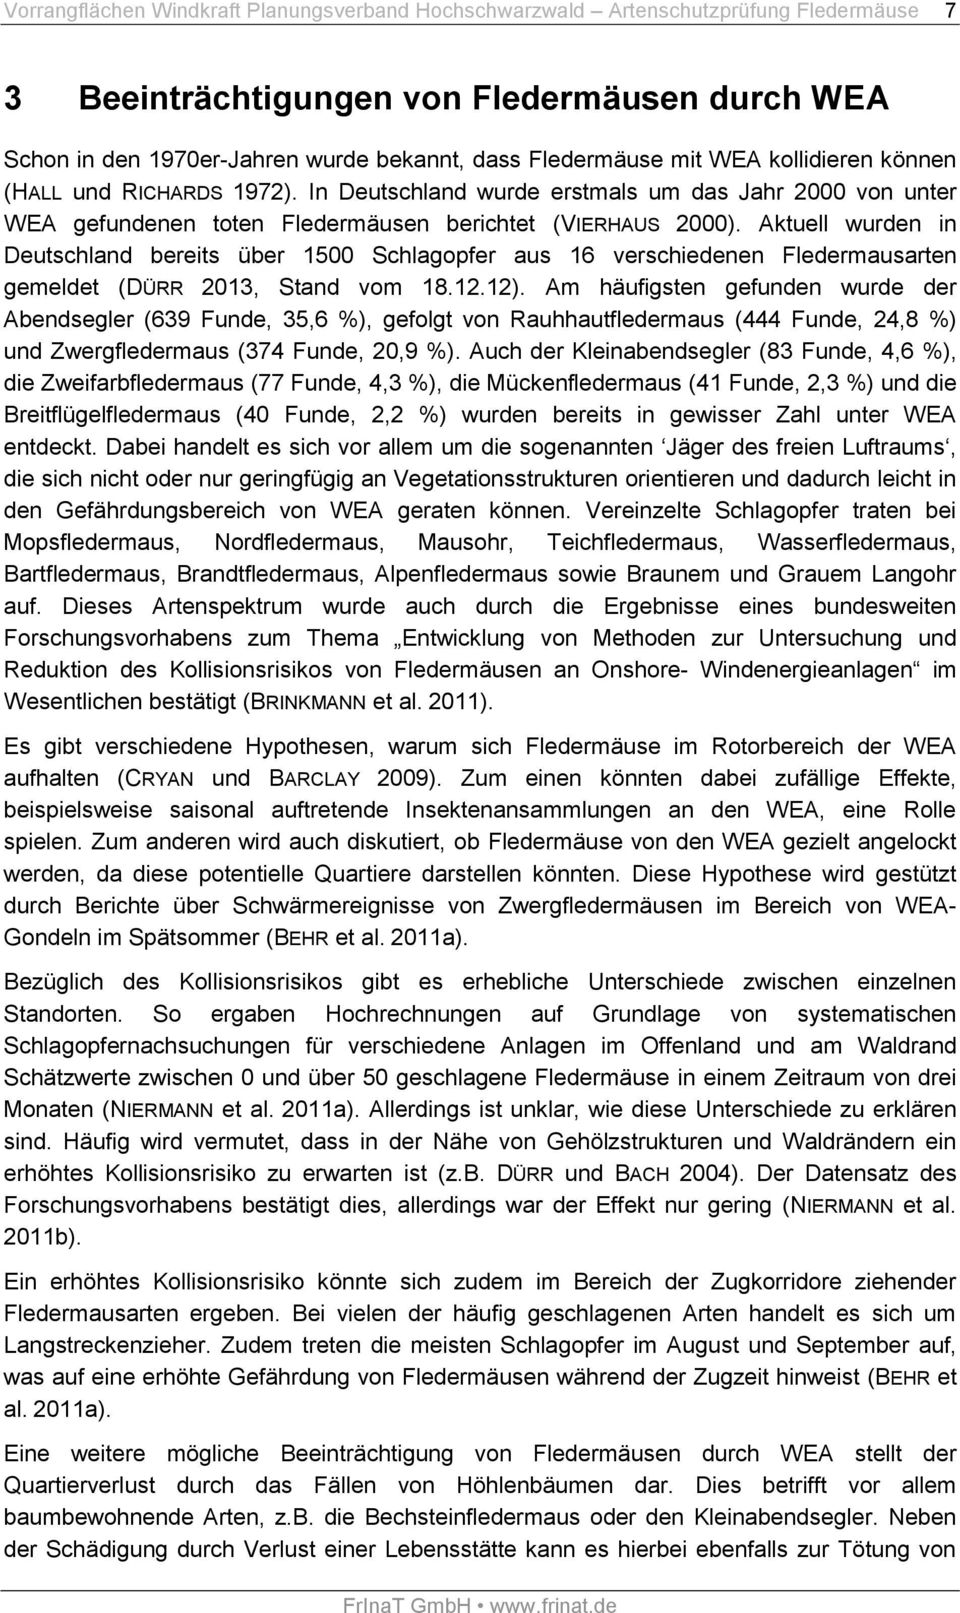 Aktuell wurden in Deutschland bereits über 1500 Schlagopfer aus 16 verschiedenen Fledermausarten gemeldet (DÜRR 2013, Stand vom 18.12.12).